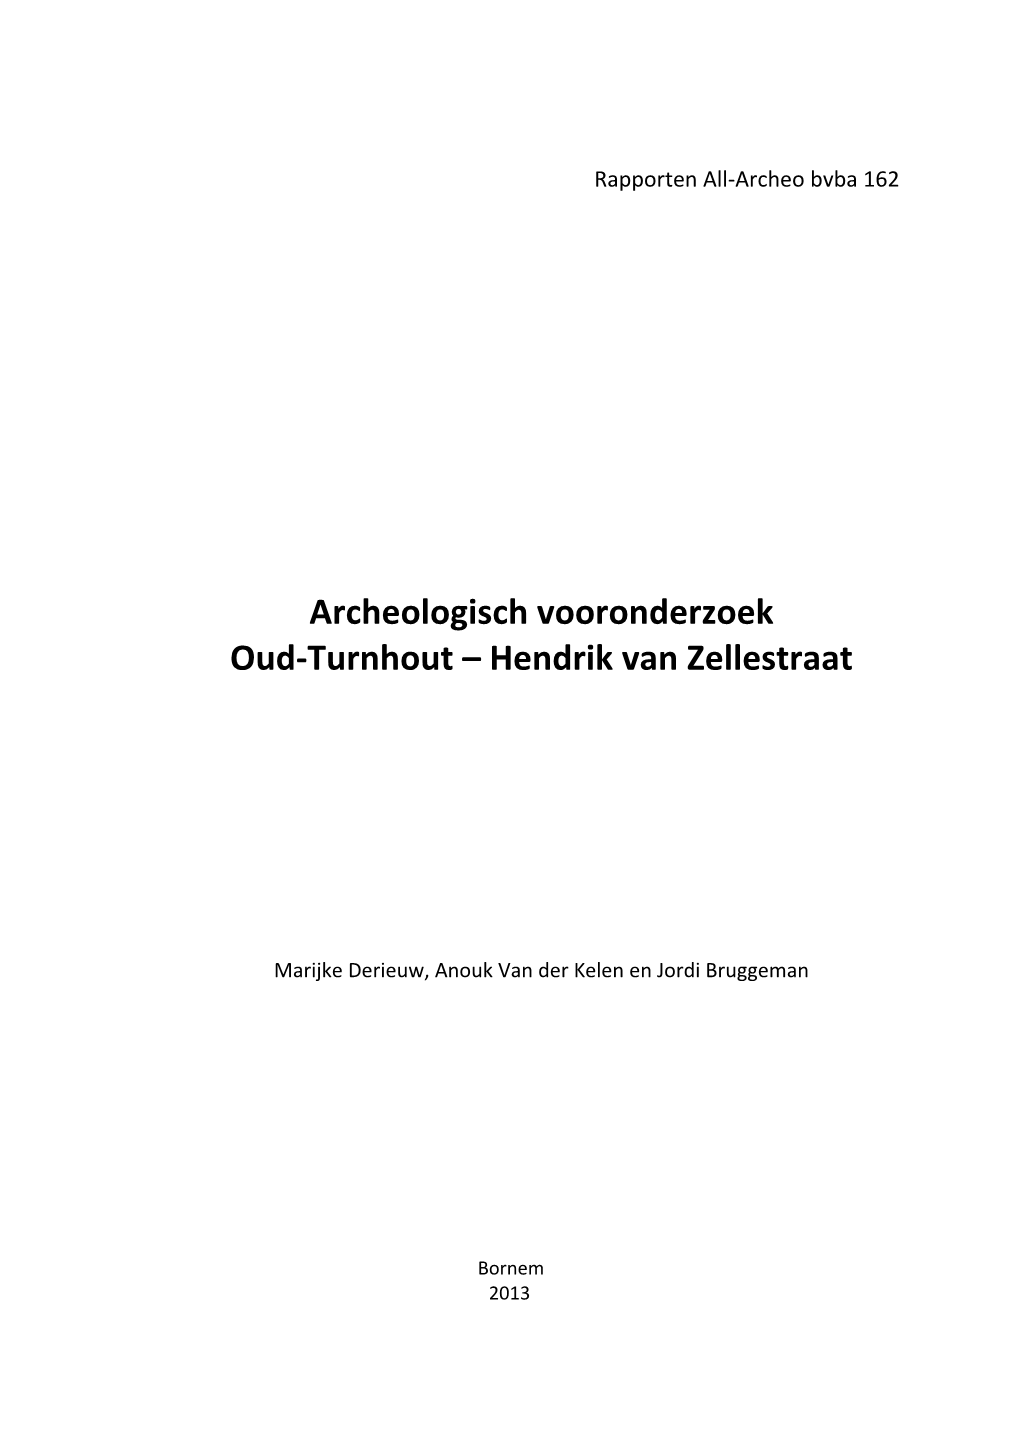 Archeologisch Vooronderzoek Oud-Turnhout – Hendrik Van Zellestraat